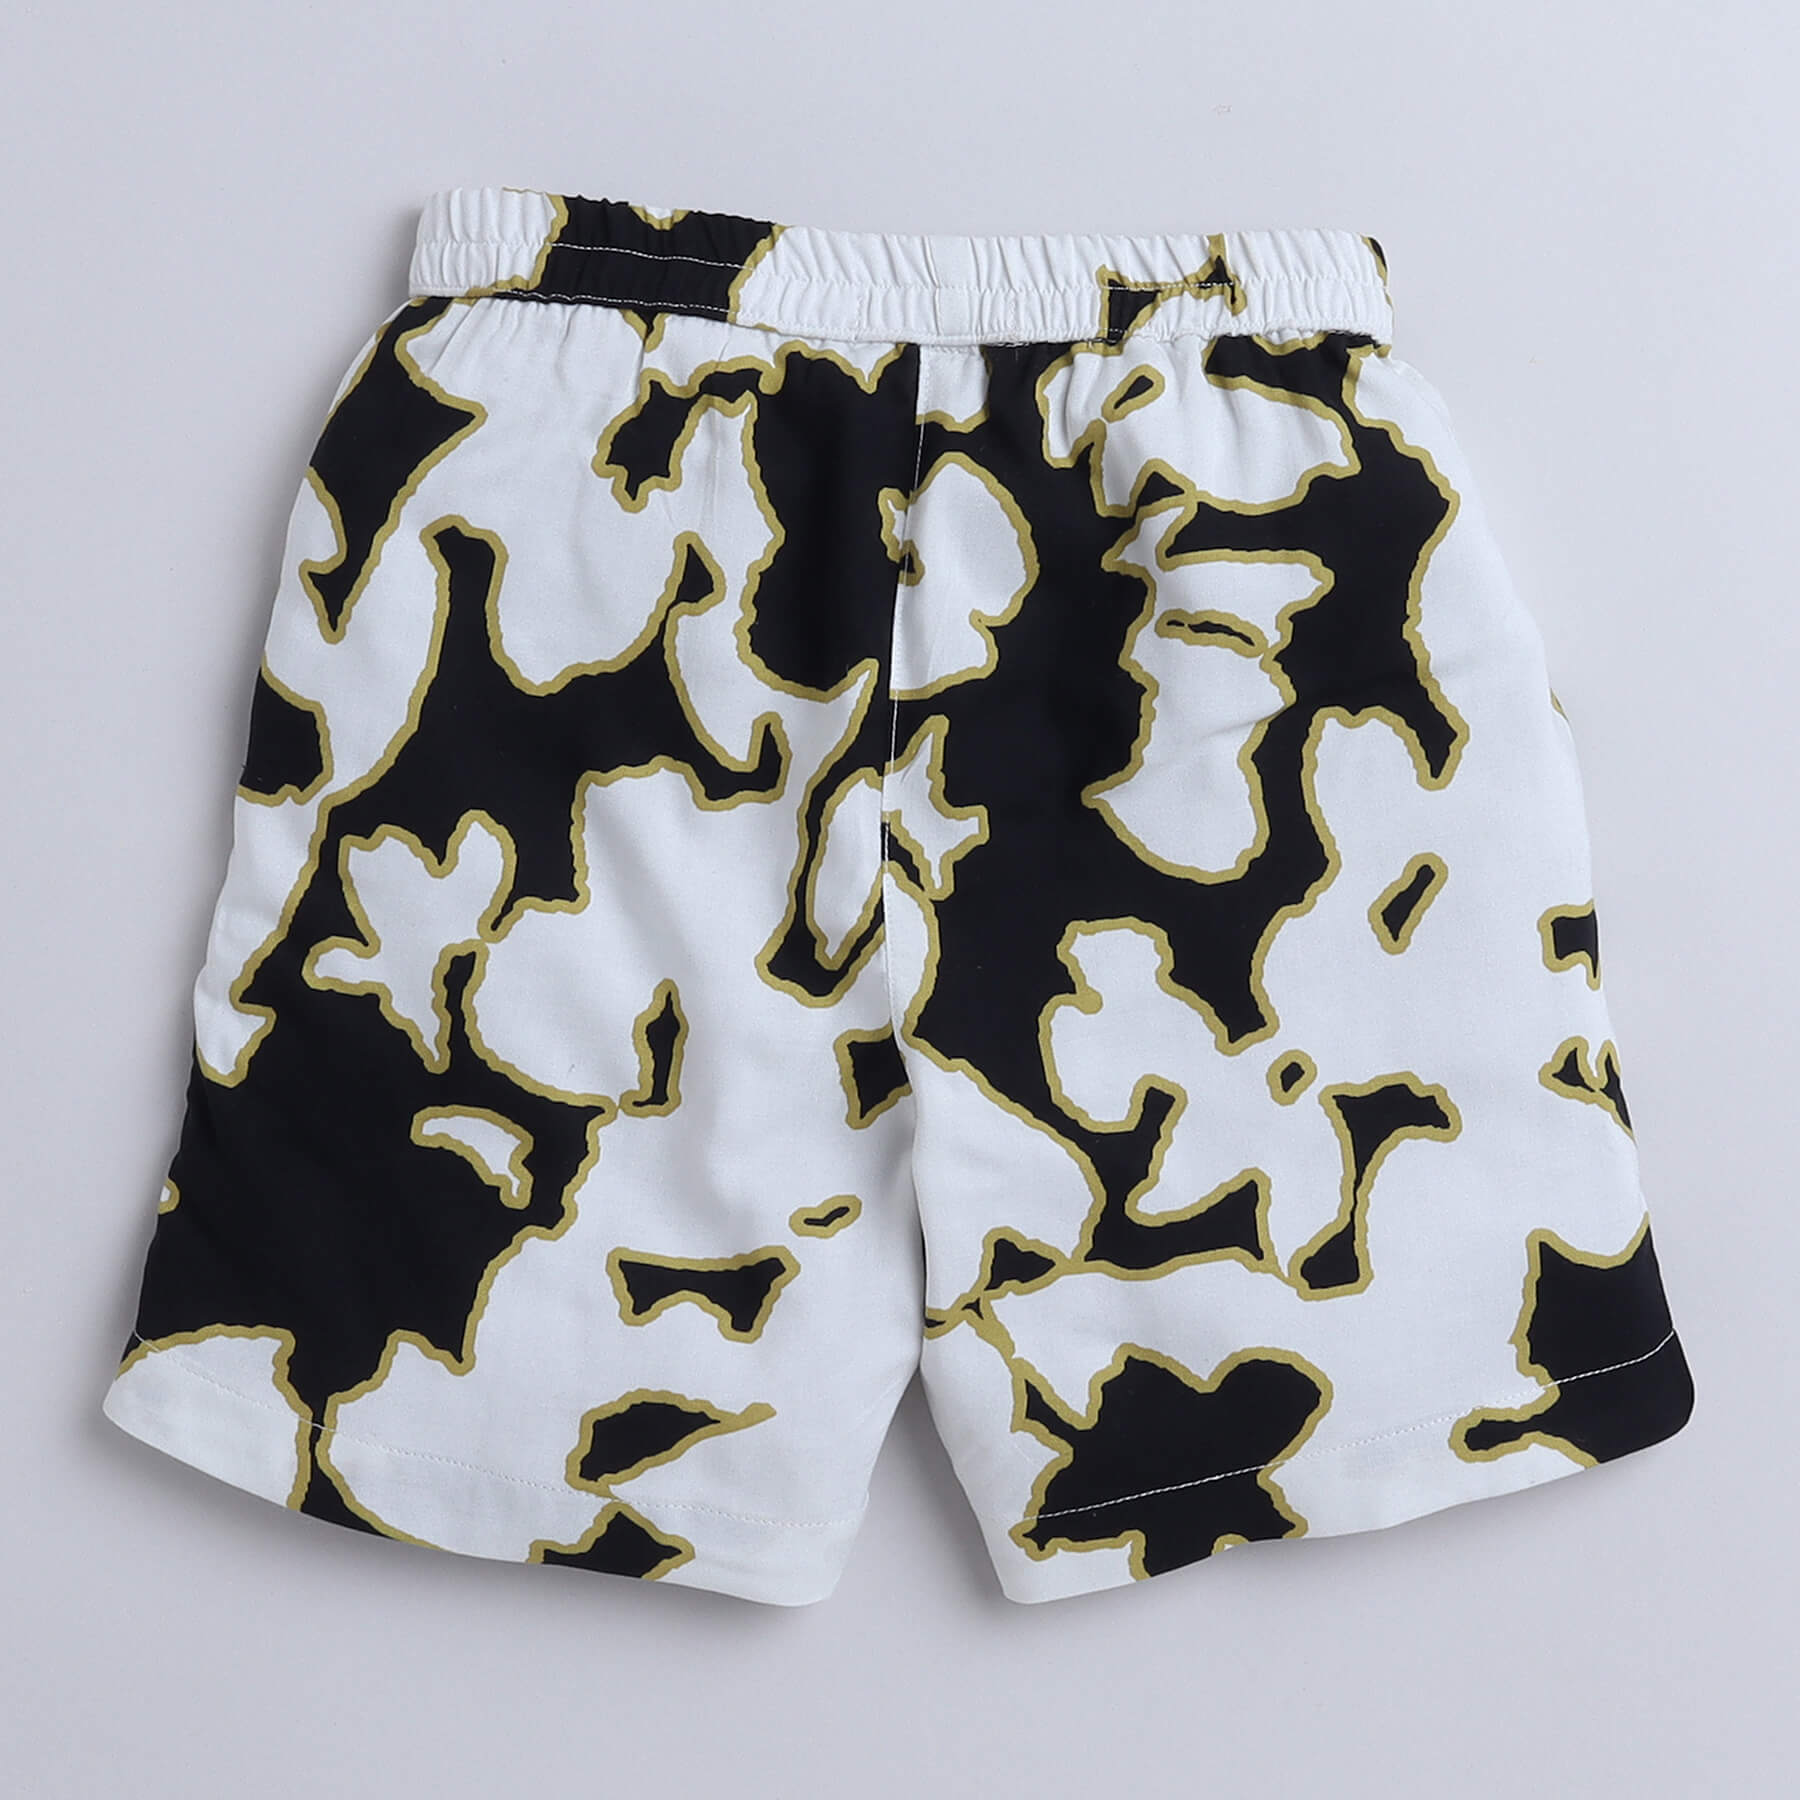 Taffy viscose abstract printed half sleeves shirt and shorts set - Black/Multi